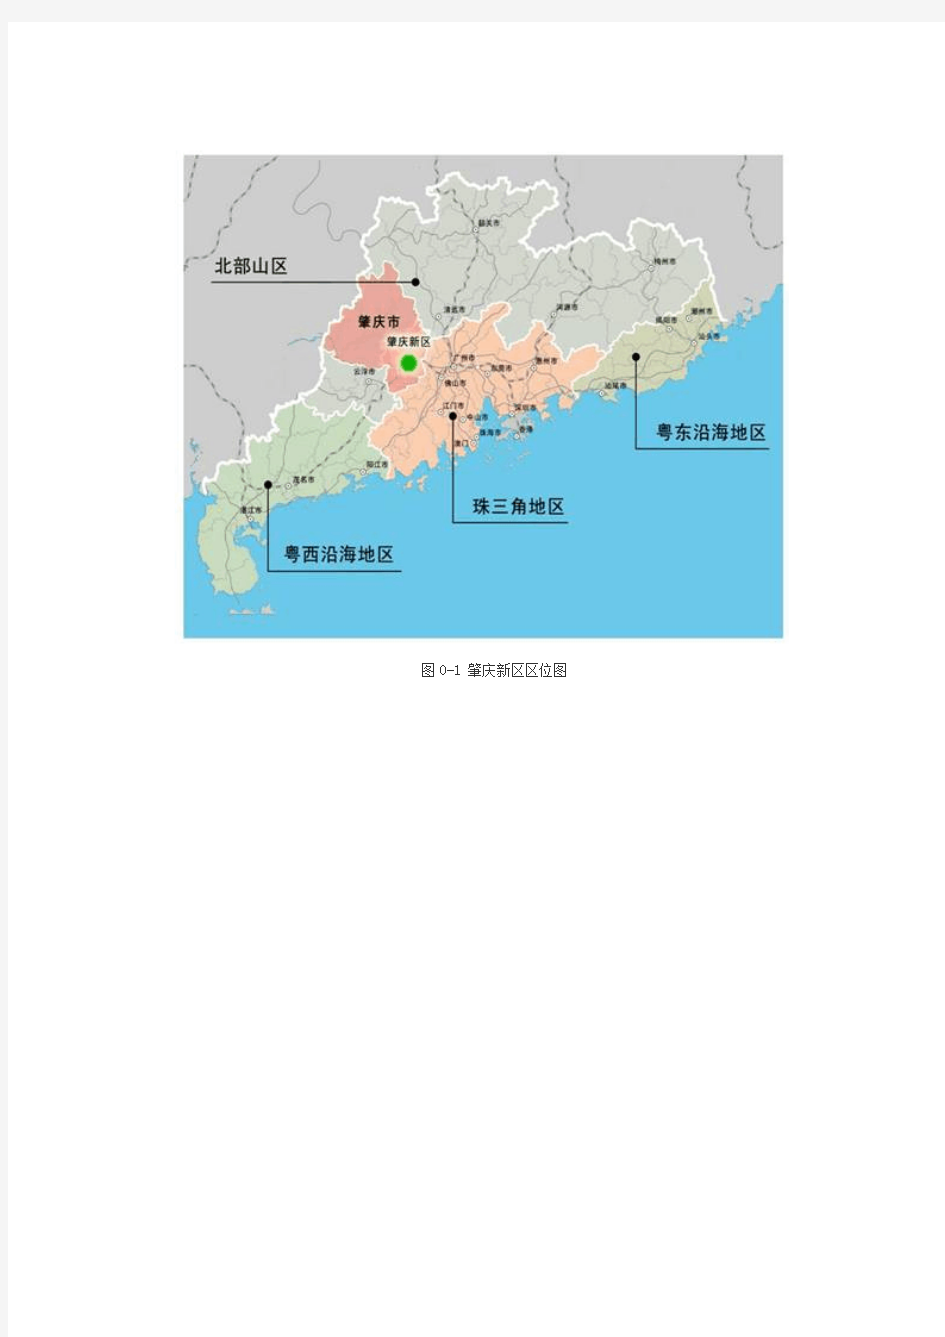 广东肇庆新区发展总体规划